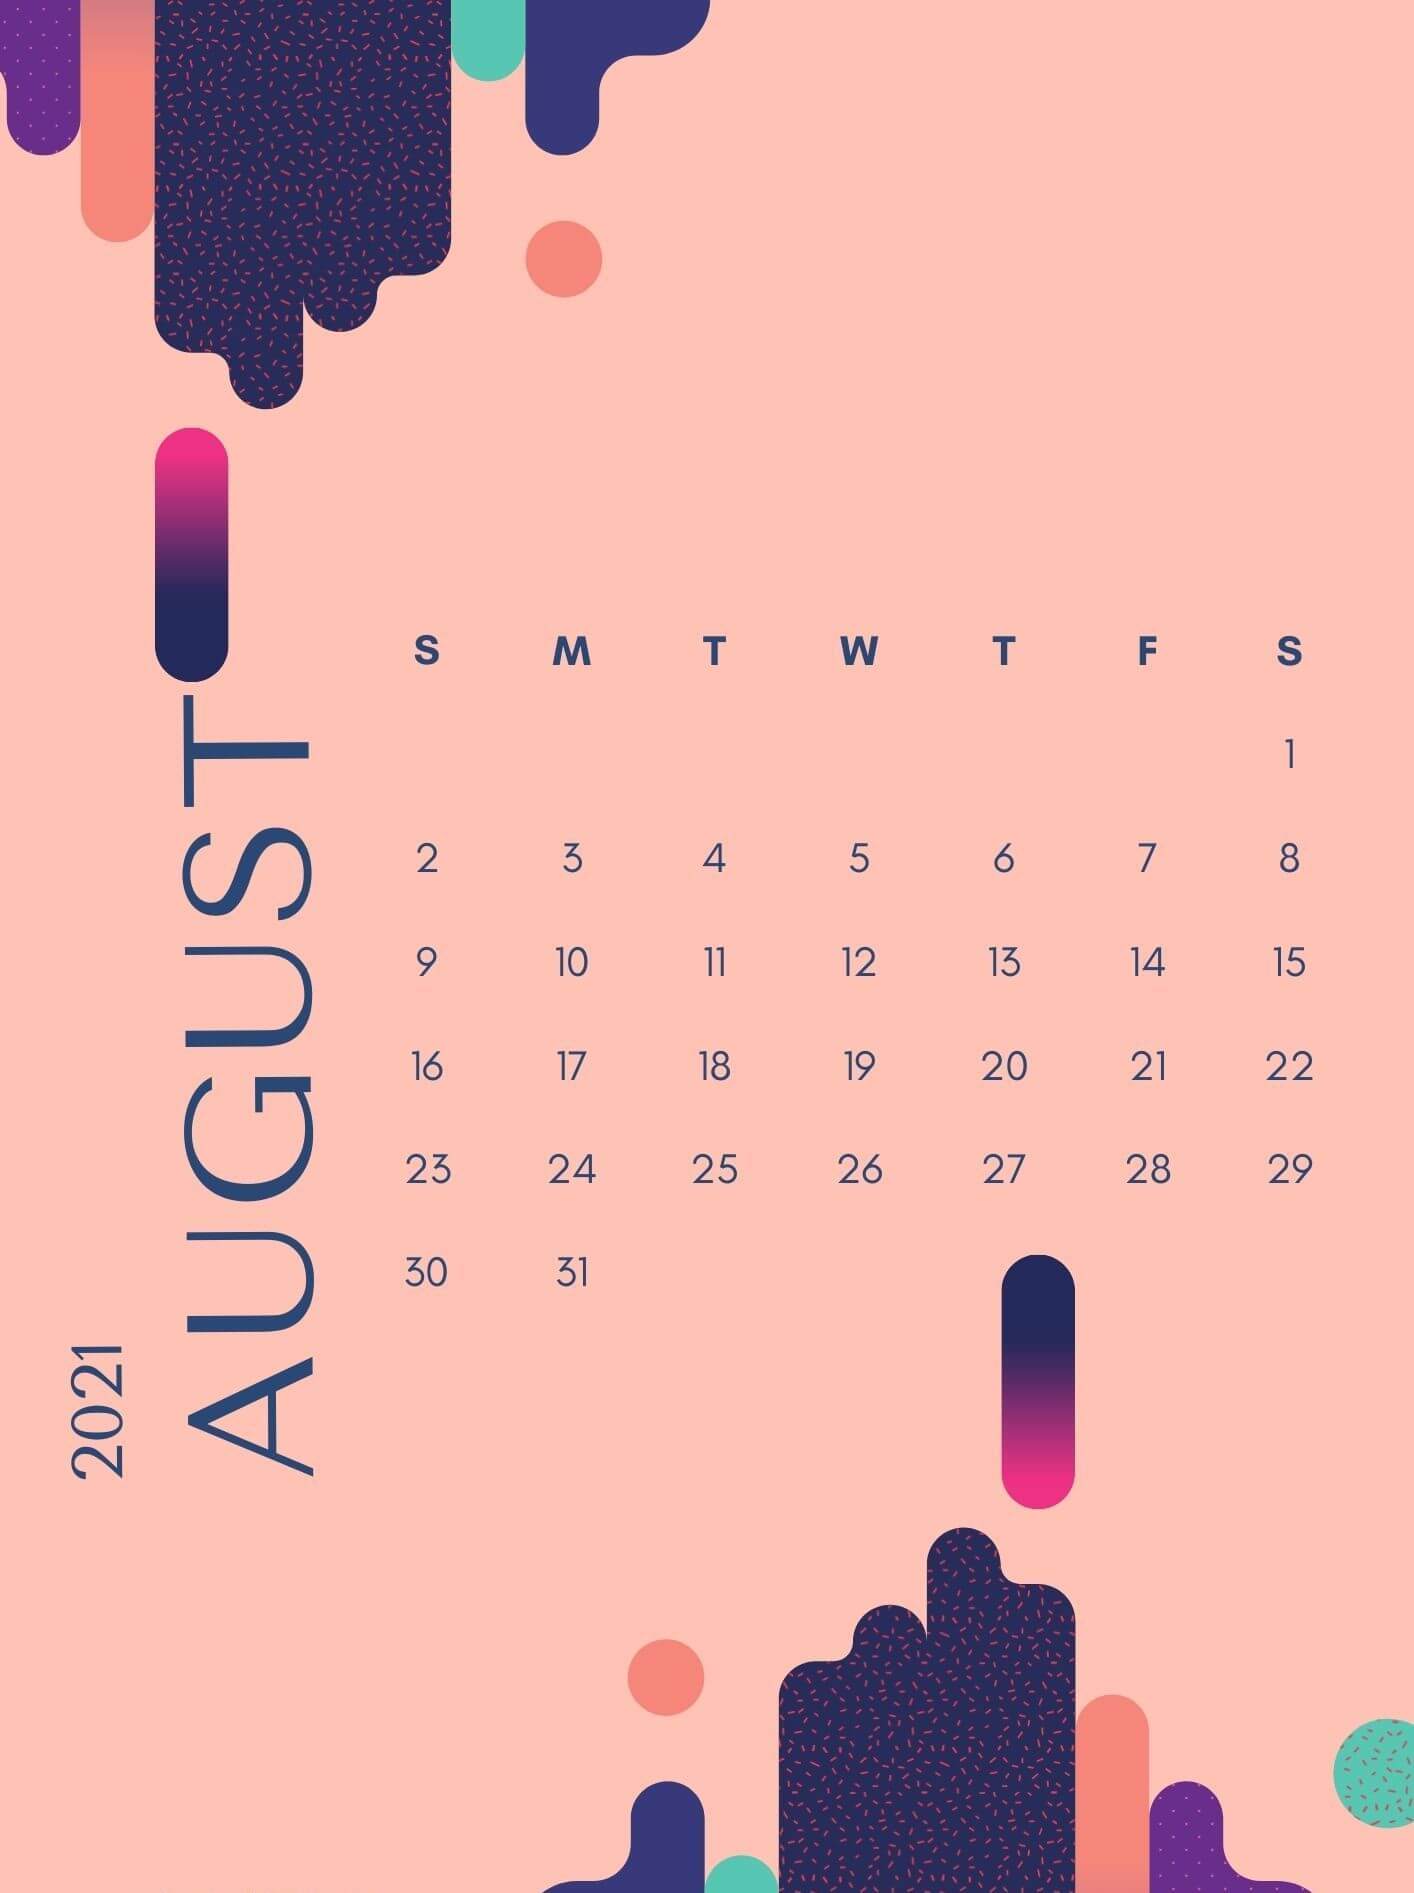 August 2021 iPhone Calendar Wallpaper